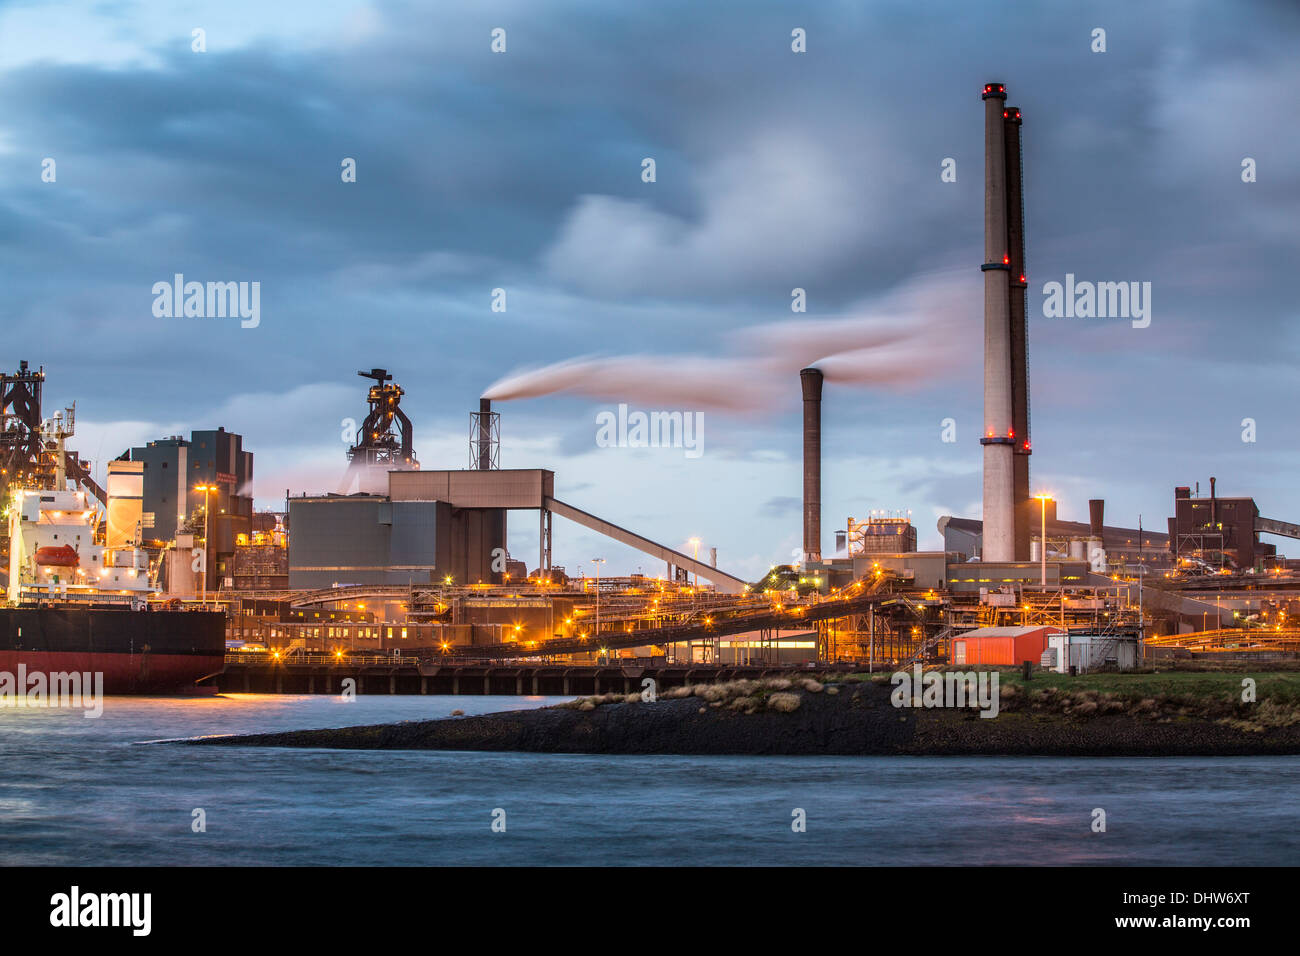 Países Bajos, IJmuiden, Tata fábrica de acero, altos hornos. Crepúsculo Foto de stock